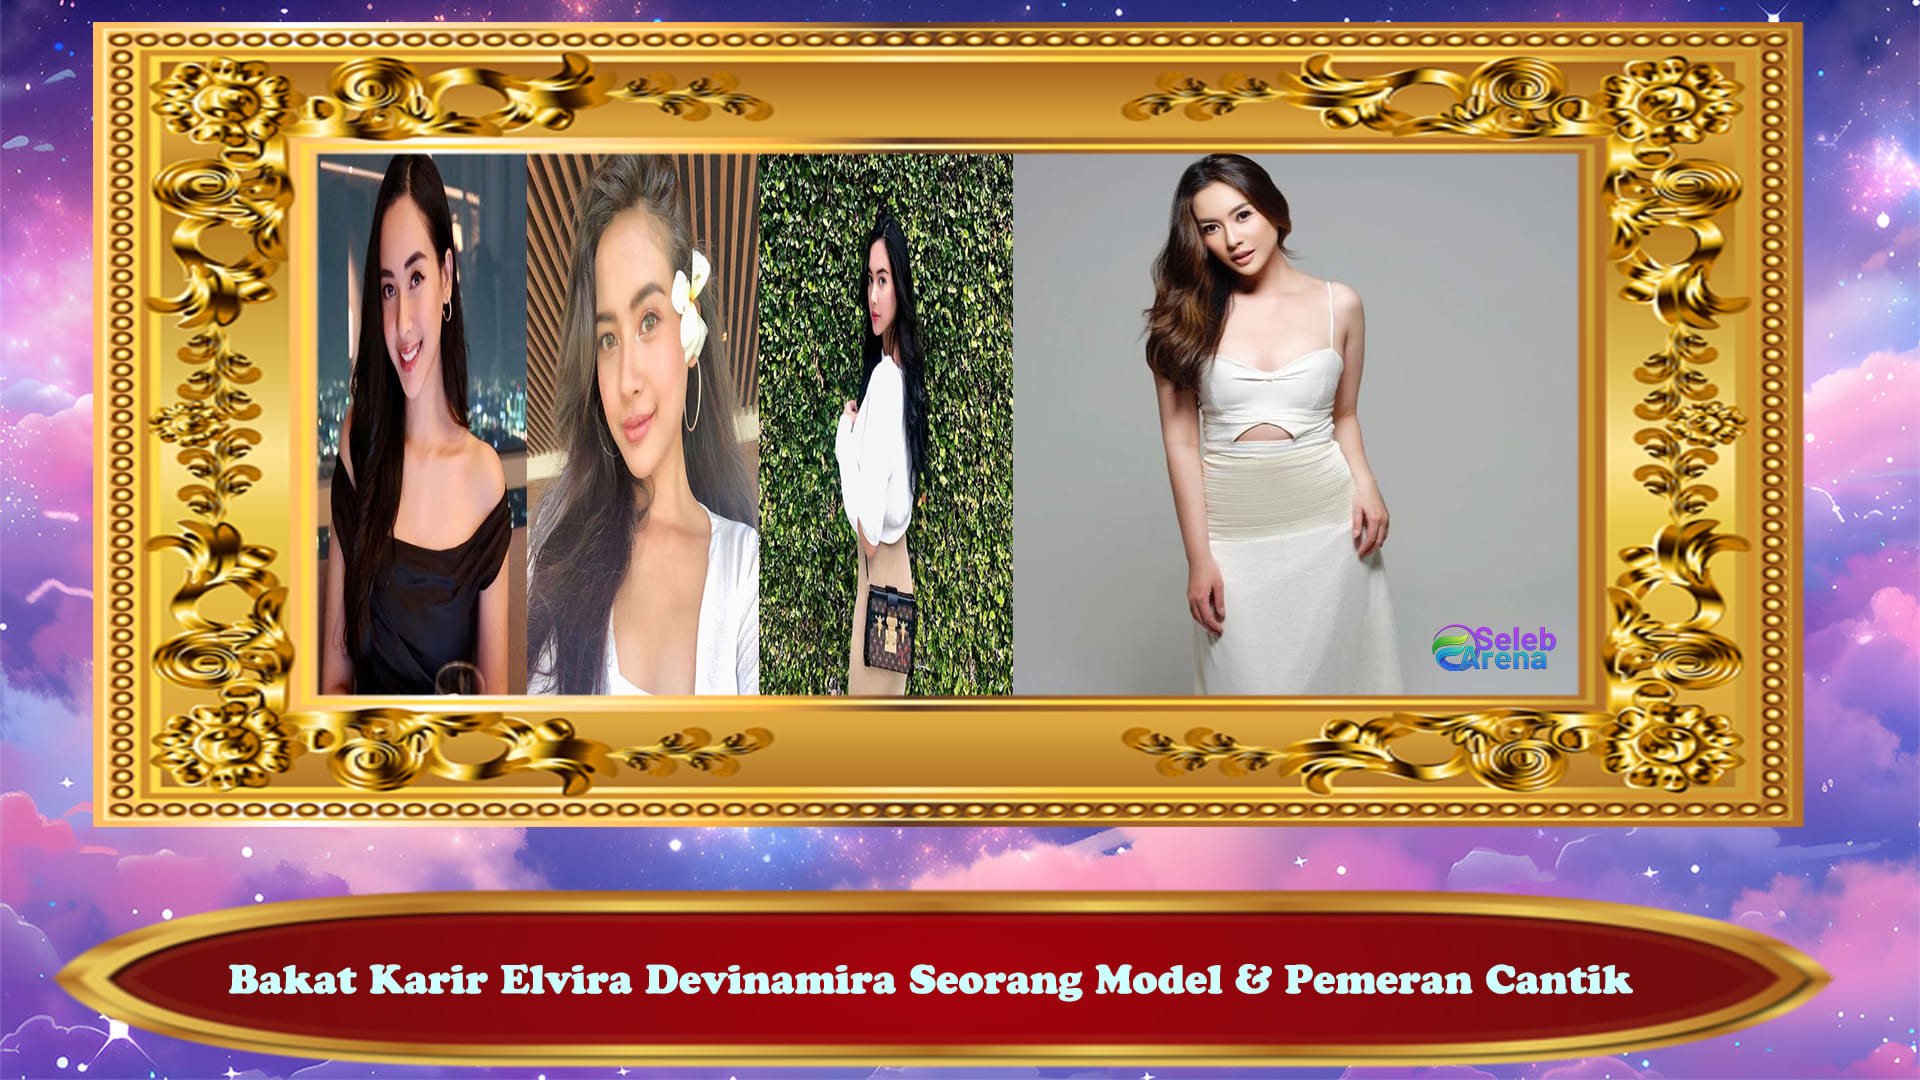 Bakat Karir Elvira Devinamira Seorang Model & Pemeran Cantik